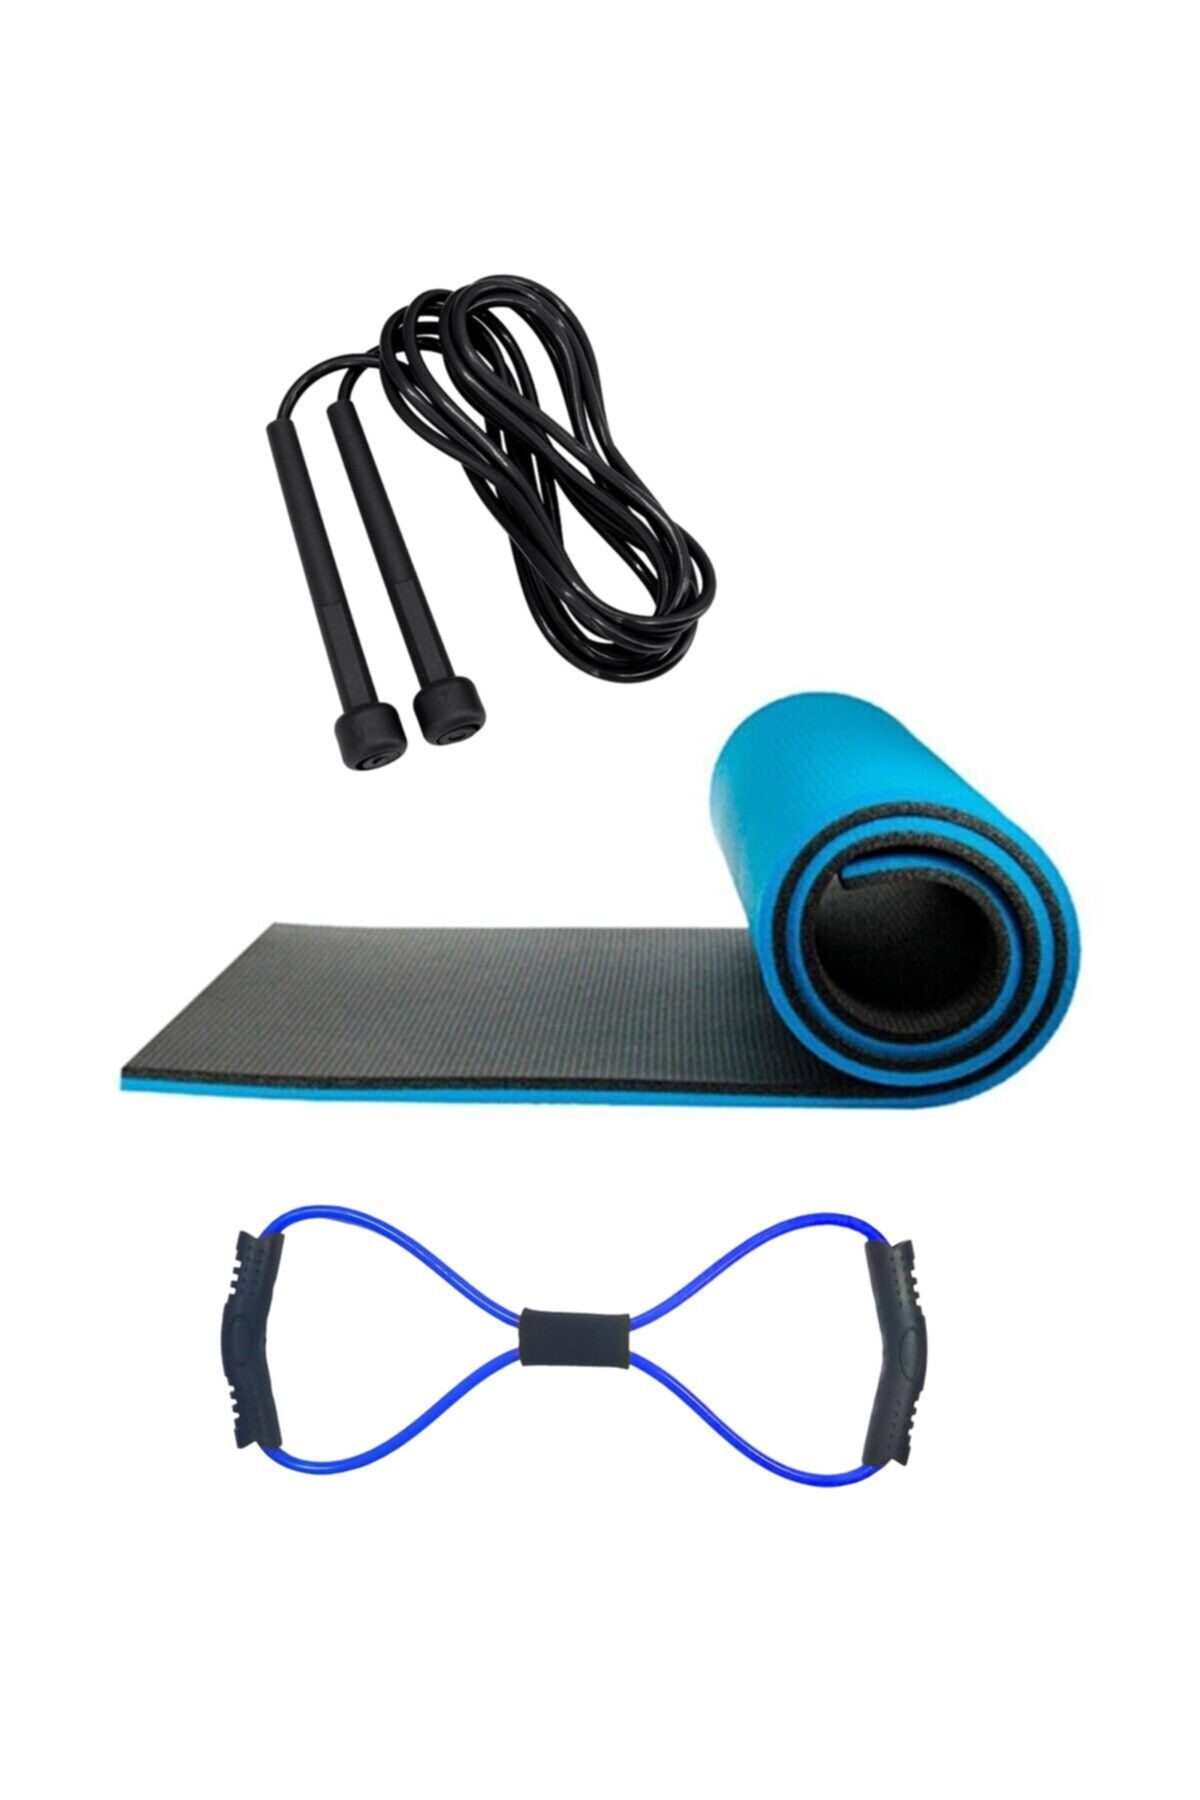 Tosima 8mm Pilates Matı Sekizgen Egzersiz Lastiği Ve Atlama Ipi Seti Yoga Matı Egzersiz Minderi